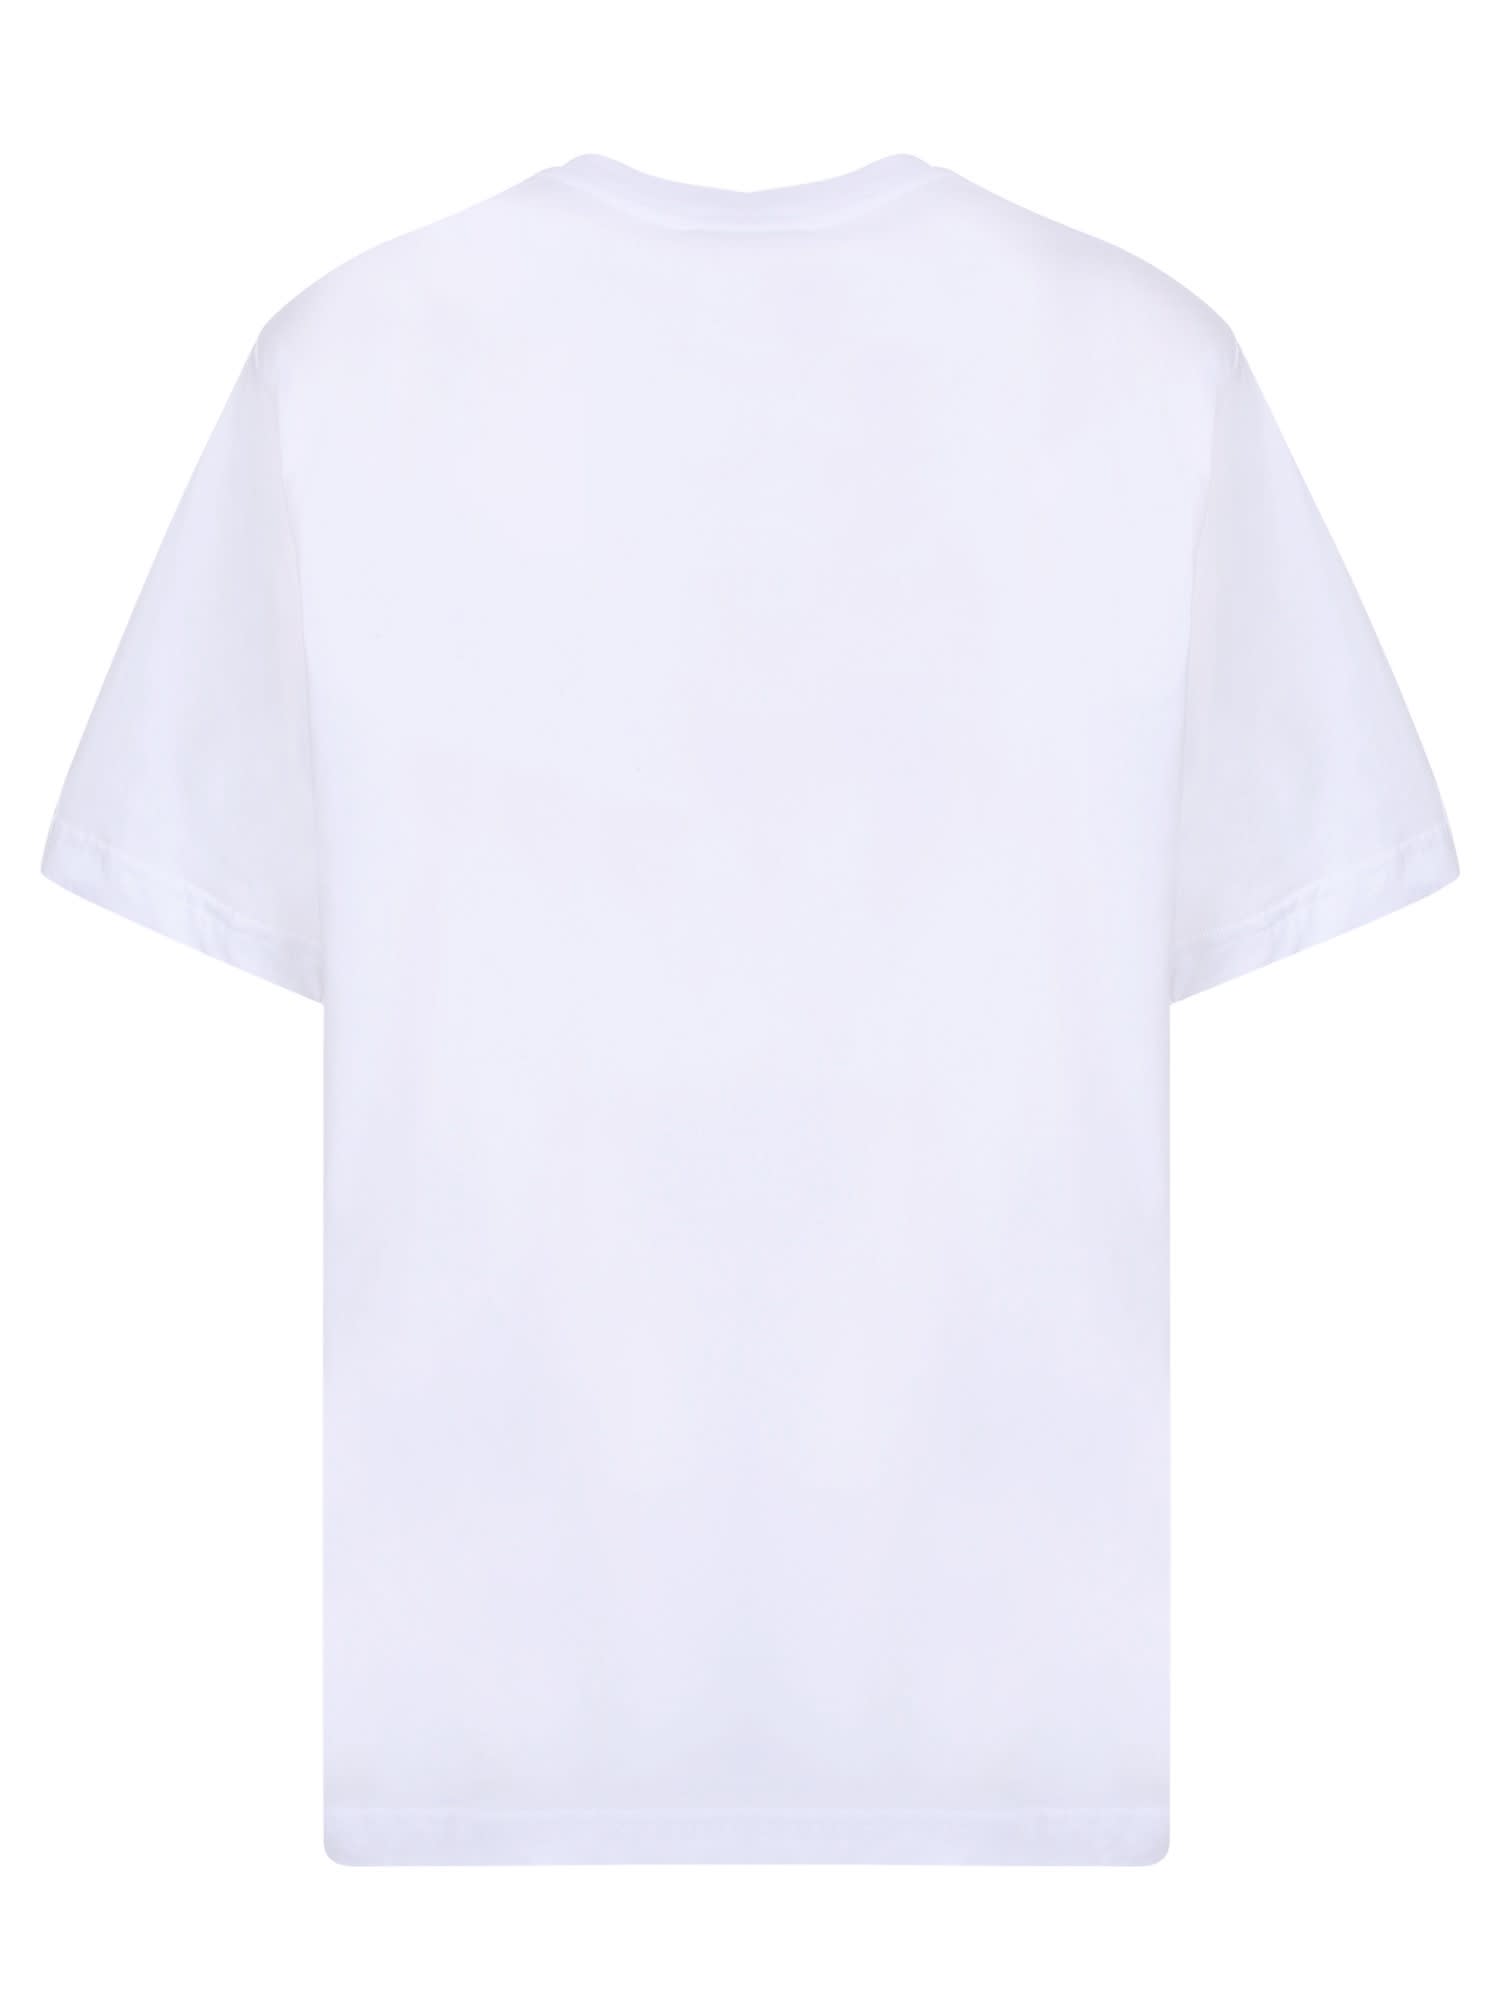 Shop Dolce & Gabbana White Sicilians Are Sensational T-shirt